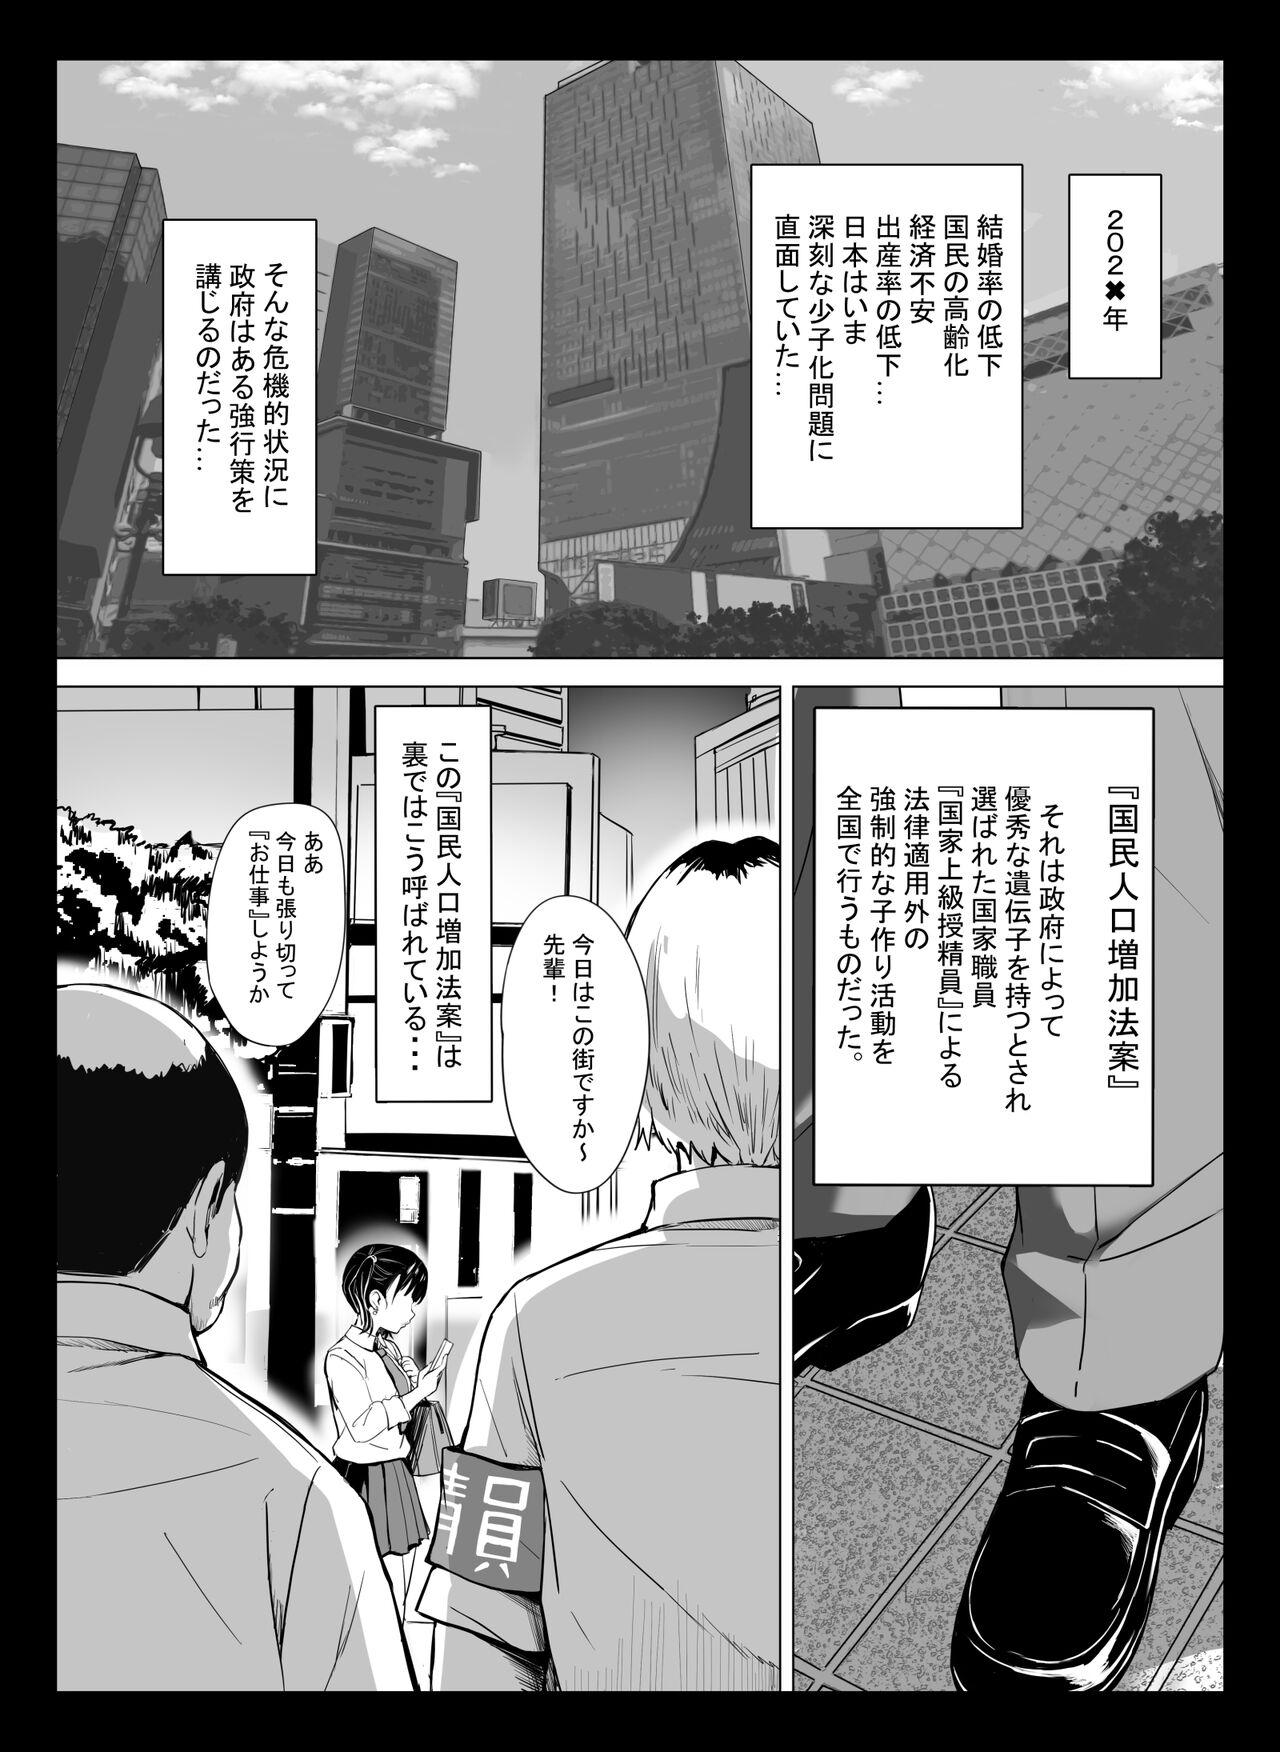 Tesao Kuni ho.〜 Kokumin onaho-ka houan 〜 - Original Seduction - Page 2